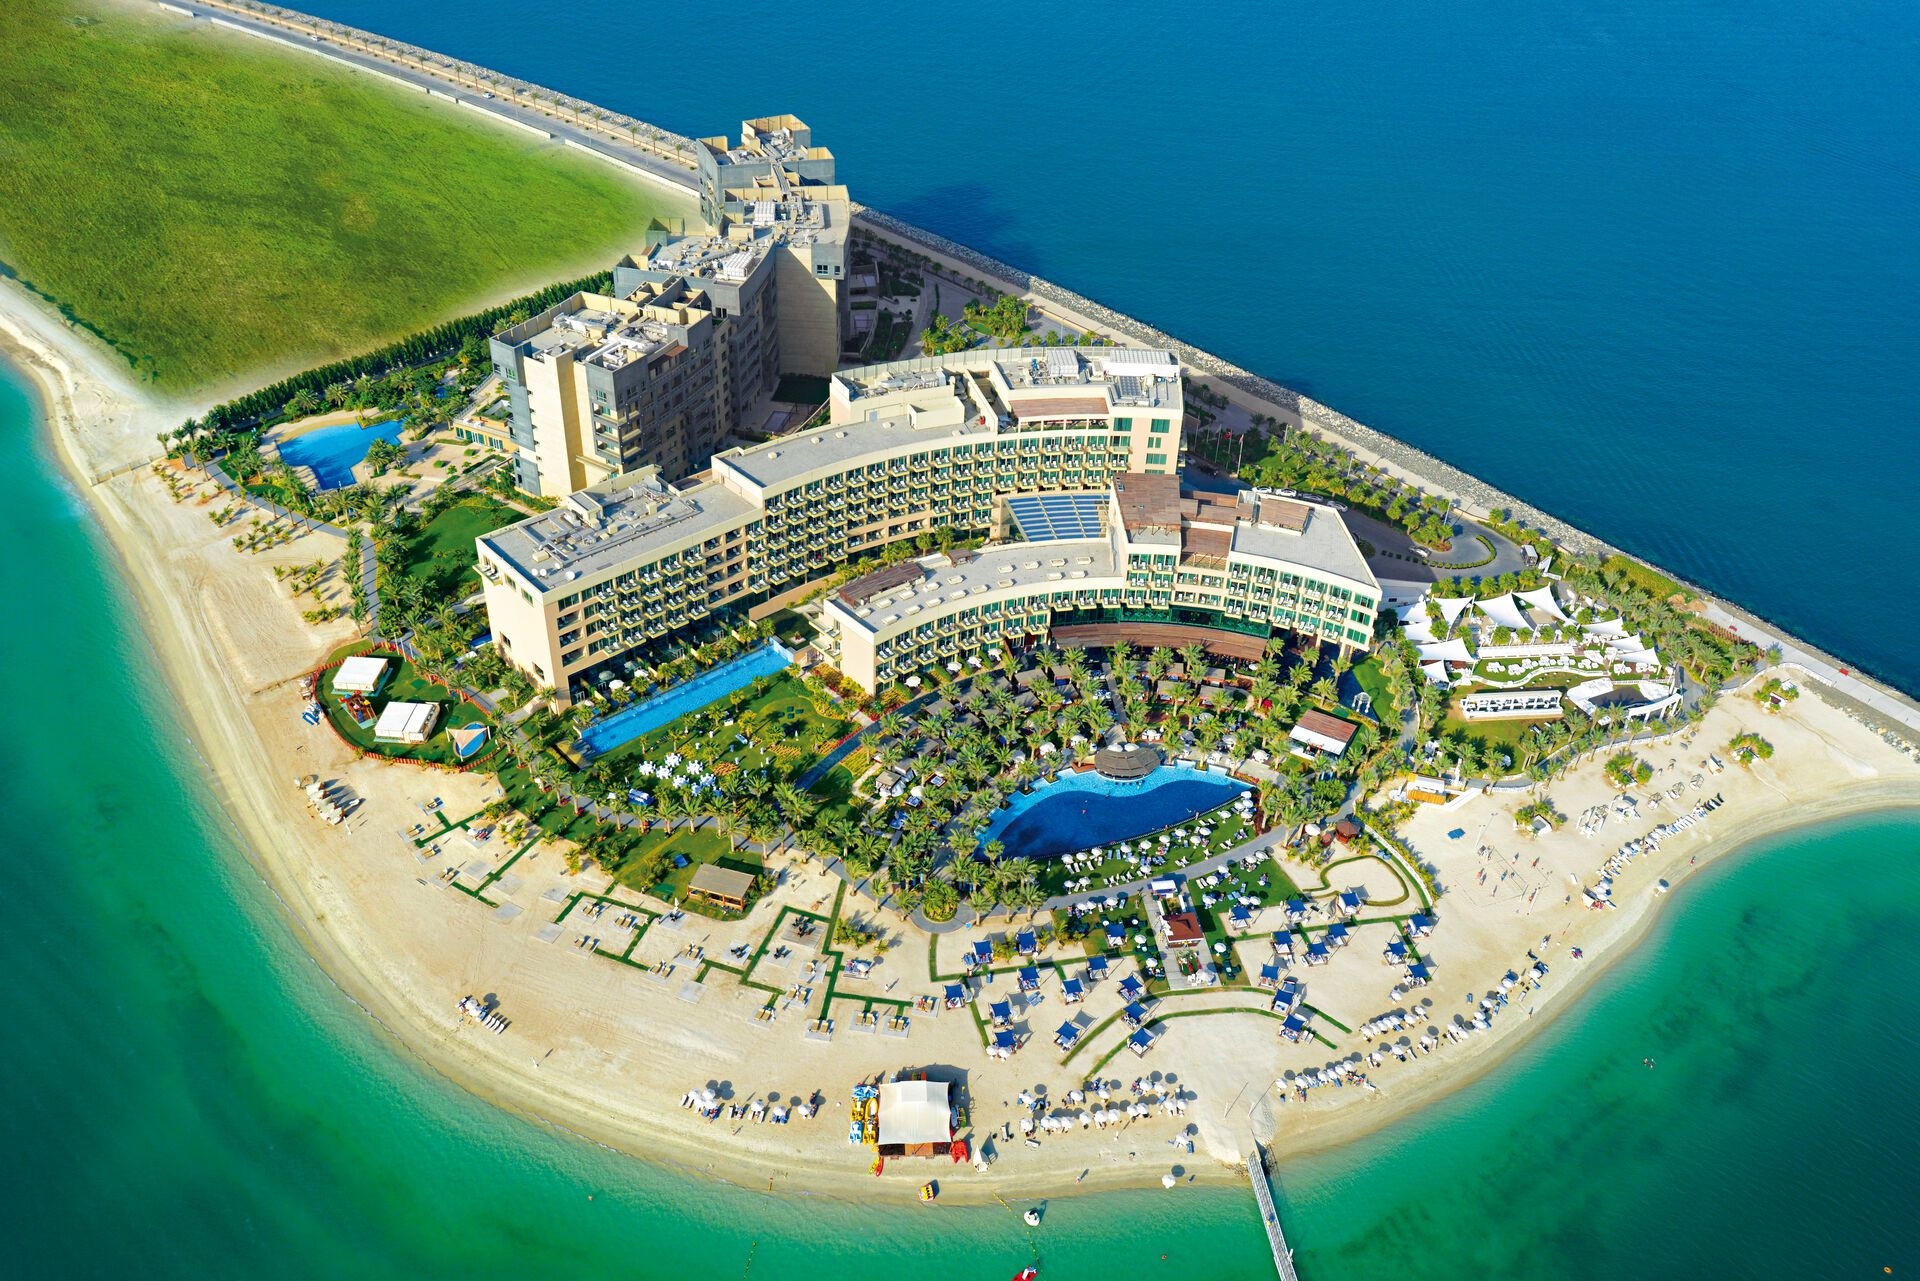 Emirats Arabes Unis - Dubaï - Rixos The Palm Dubai Hotel and Suites 5*